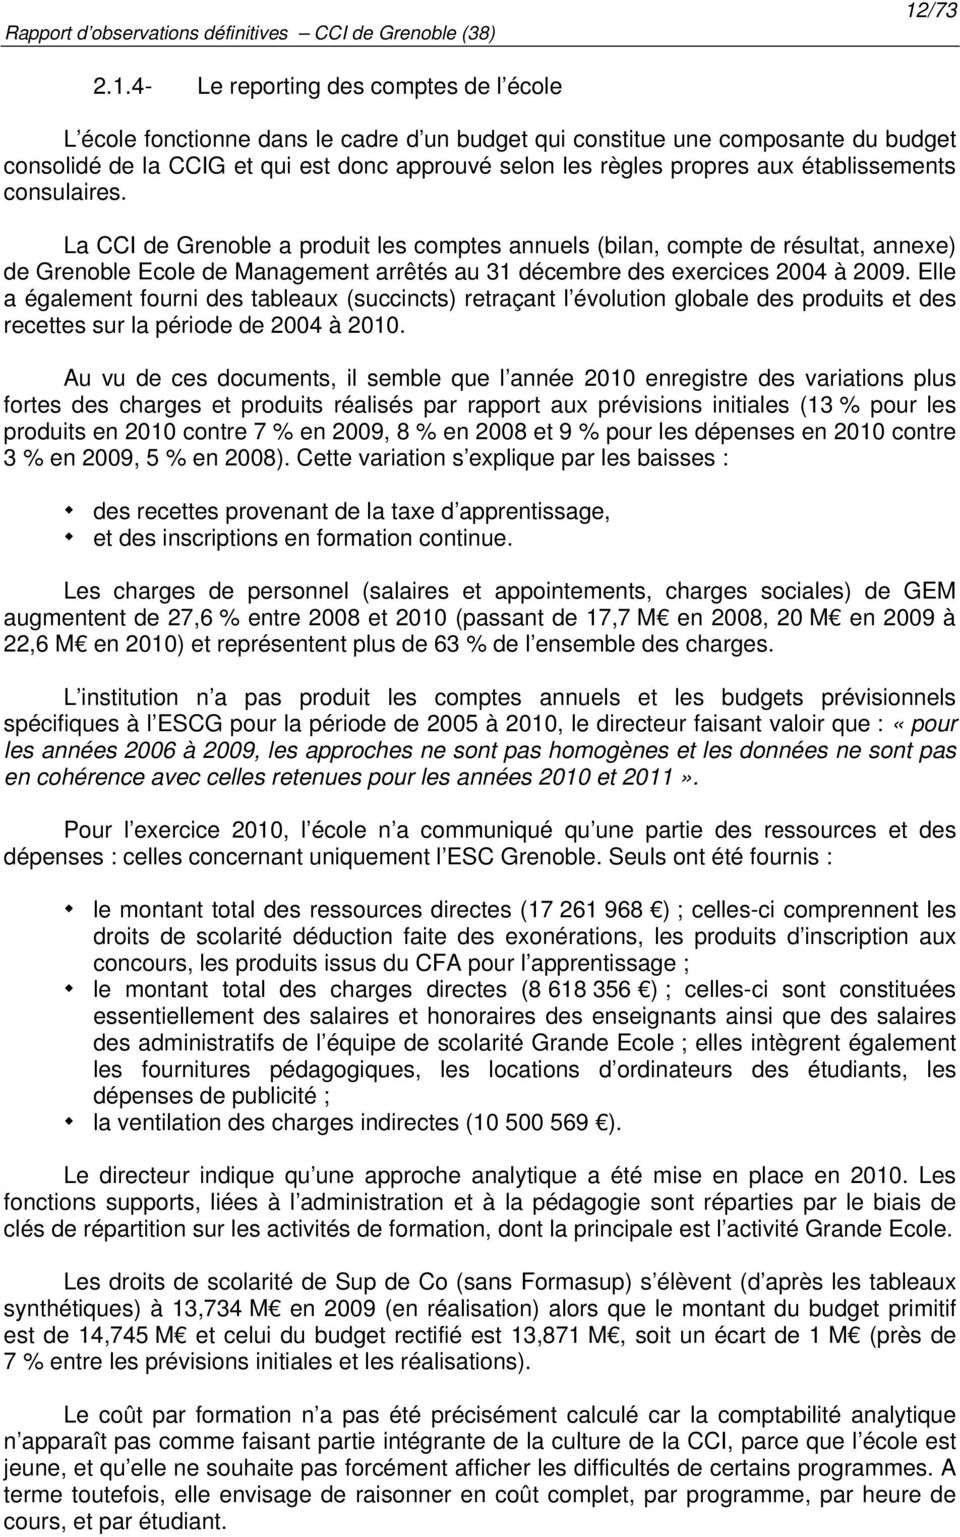 La CCI de Grenoble a produit les comptes annuels (bilan, compte de résultat, annexe) de Grenoble Ecole de Management arrêtés au 31 décembre des exercices 2004 à 2009.